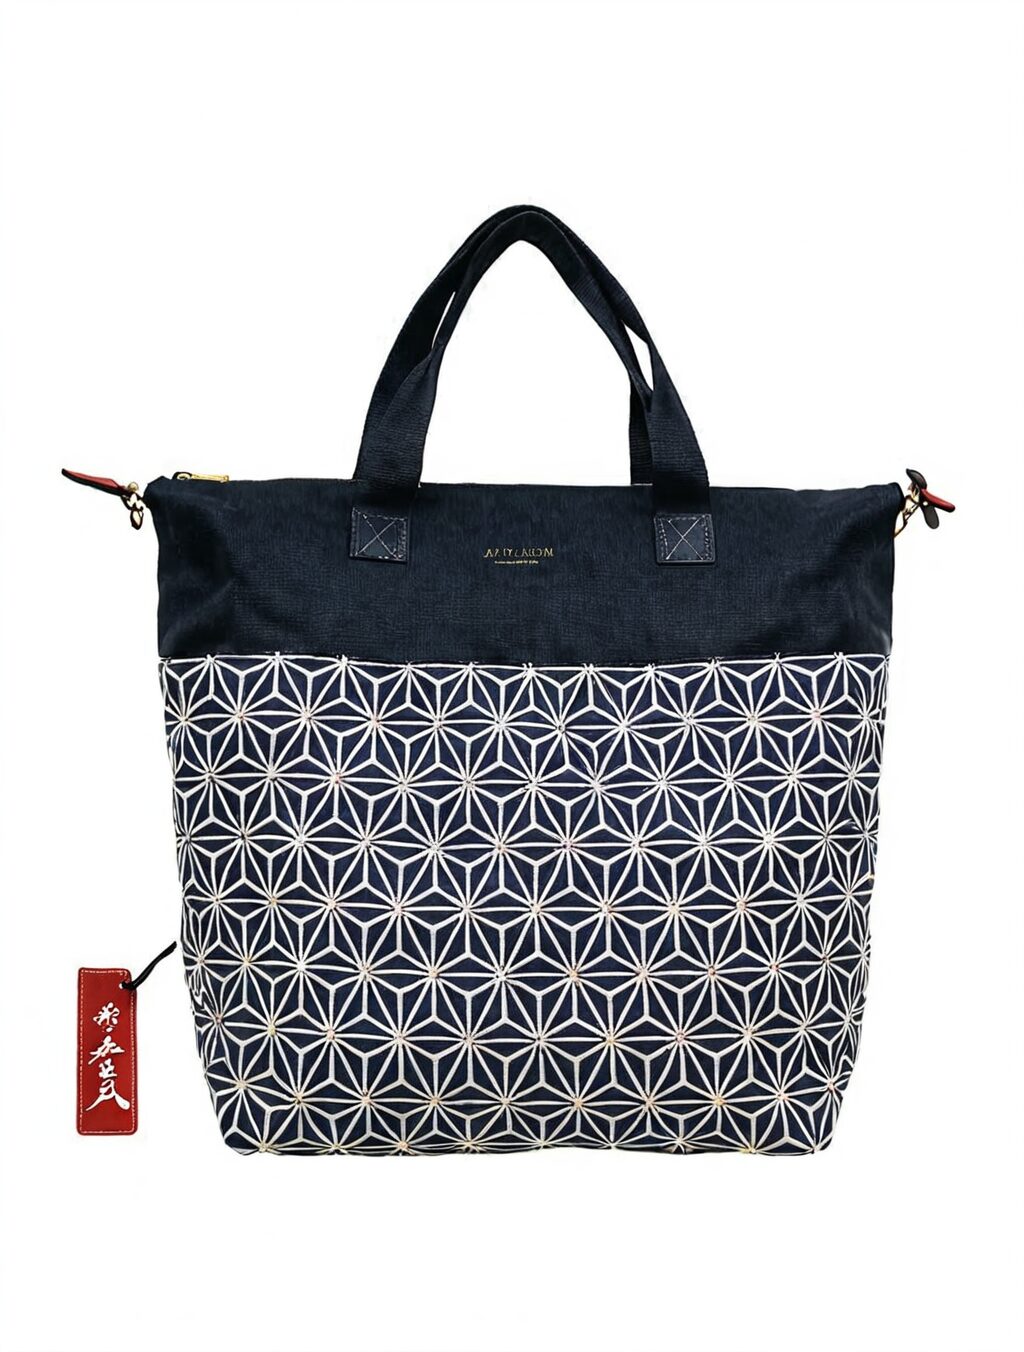 best bag for travelling japan